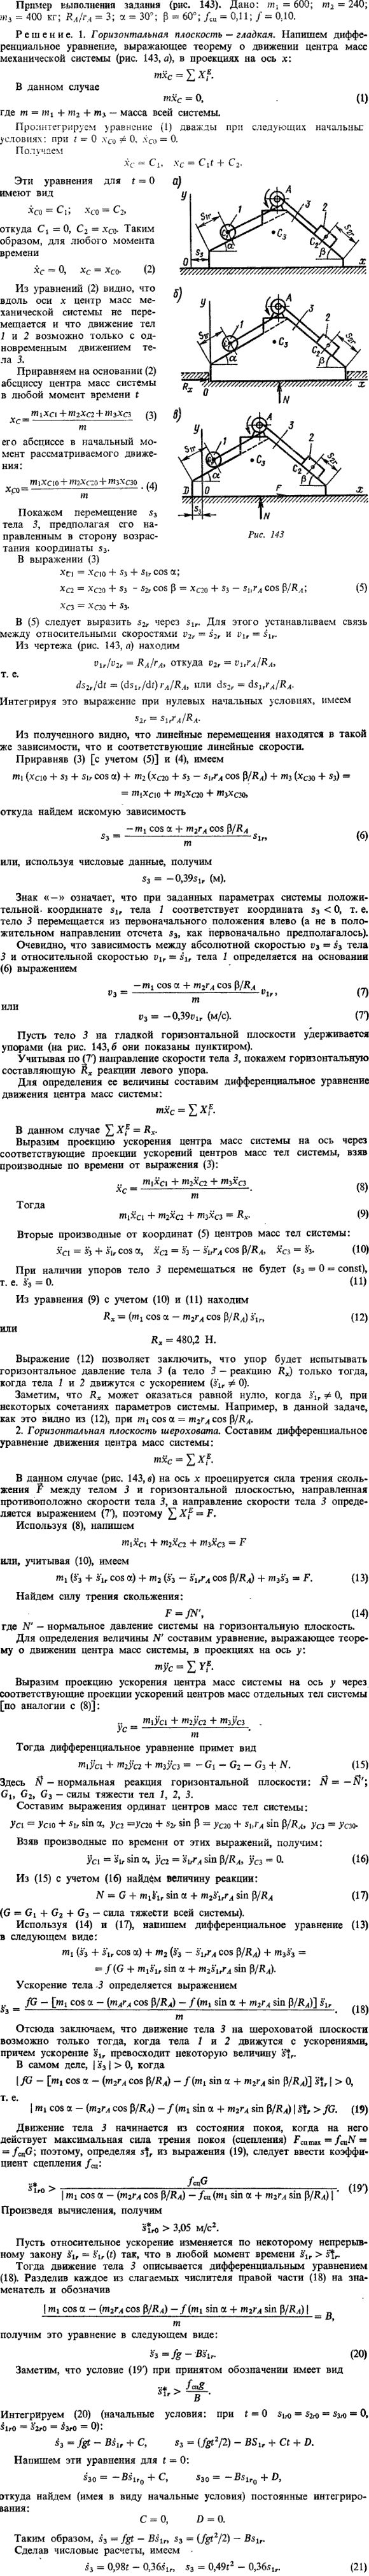 Д7 пример 1. Пример выполнения задания рис. 143 . Дано: m1=600; m2=240; m3=400 кг; RA/rA=3; α=30°; β=60°; fсц=0,11; f=0,10.